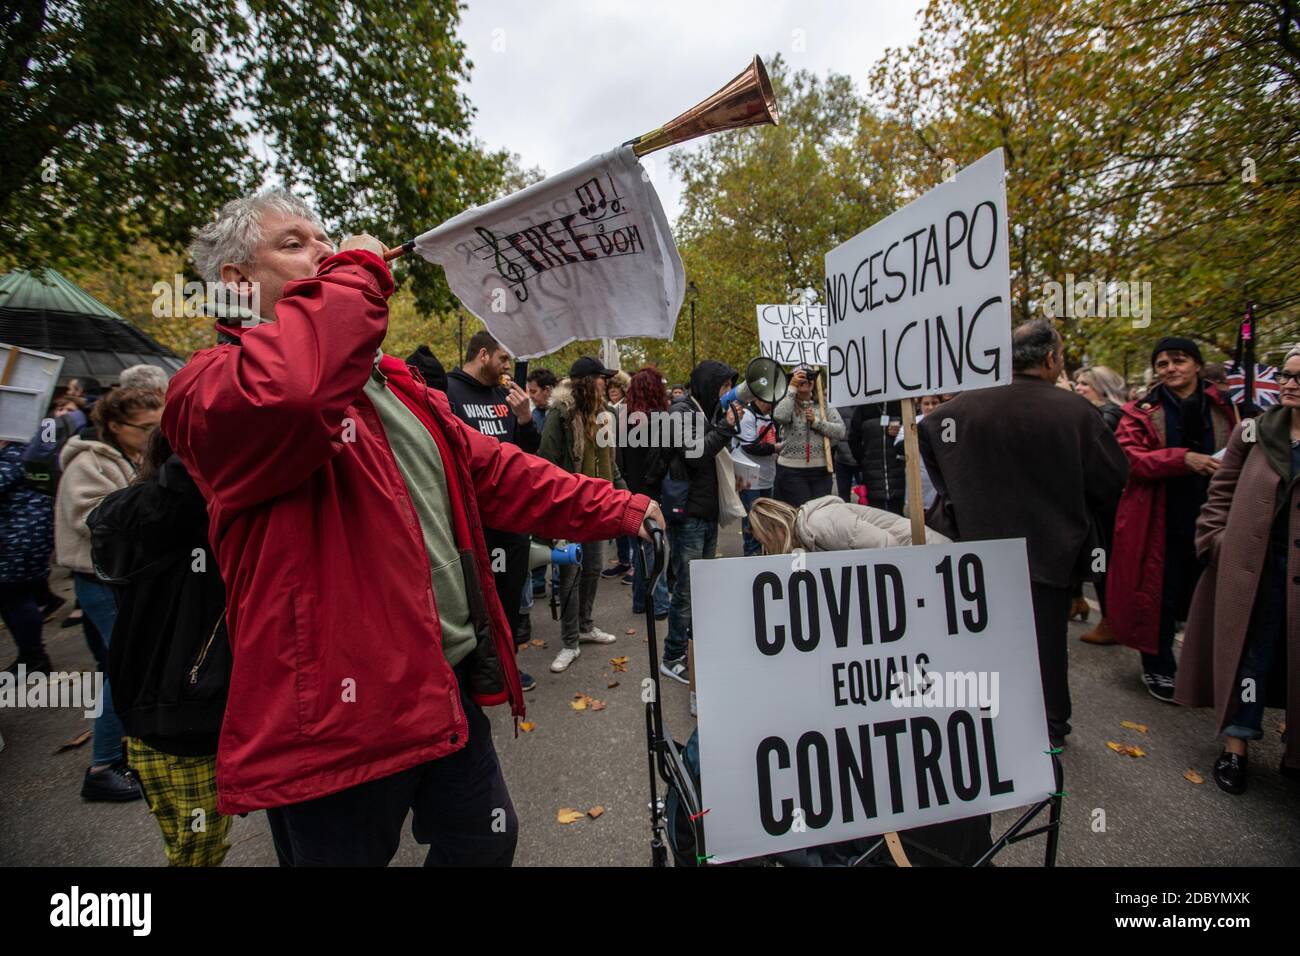 Anti-Lockdown-Protest gegen die jüngste Blockierung der Coronavirus-Pandemie durch die britische Regierung, um die Ausbreitung des Virus zu verlangsamen. Stockfoto